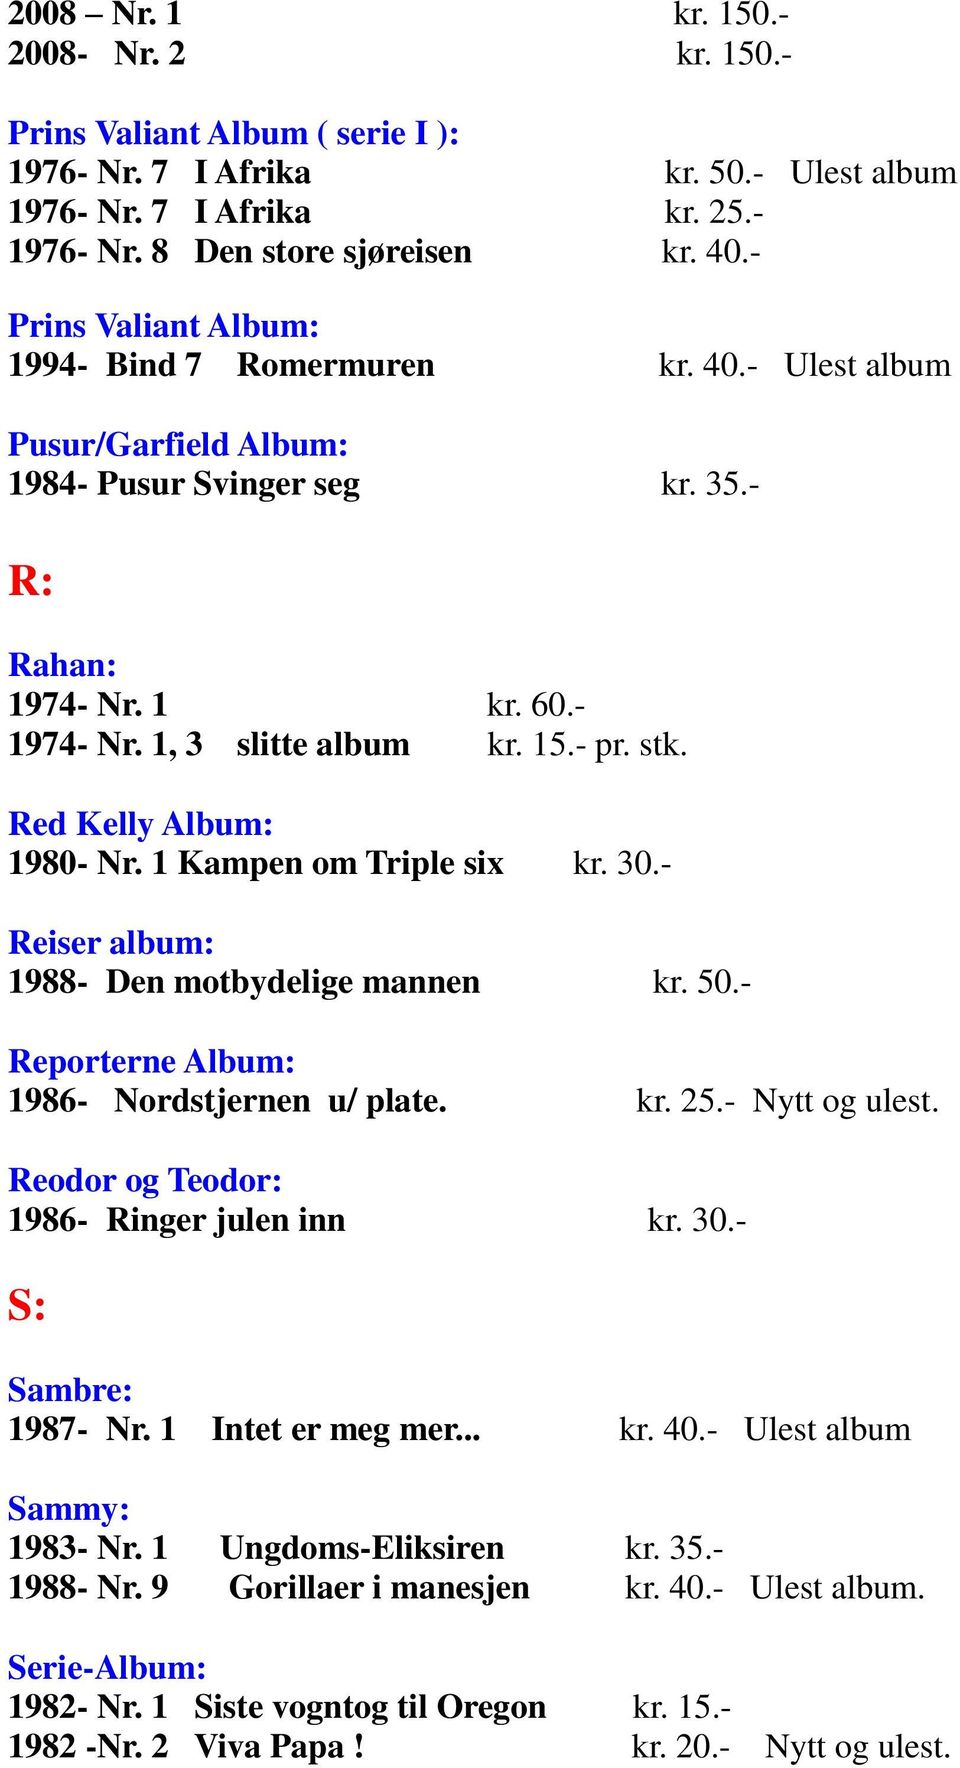 Red Kelly Album: 1980- Nr. 1 Kampen om Triple six kr. 30.- Reiser album: 1988- Den motbydelige mannen kr. 50.- Reporterne Album: 1986- Nordstjernen u/ plate. kr. 25.- Nytt og ulest.